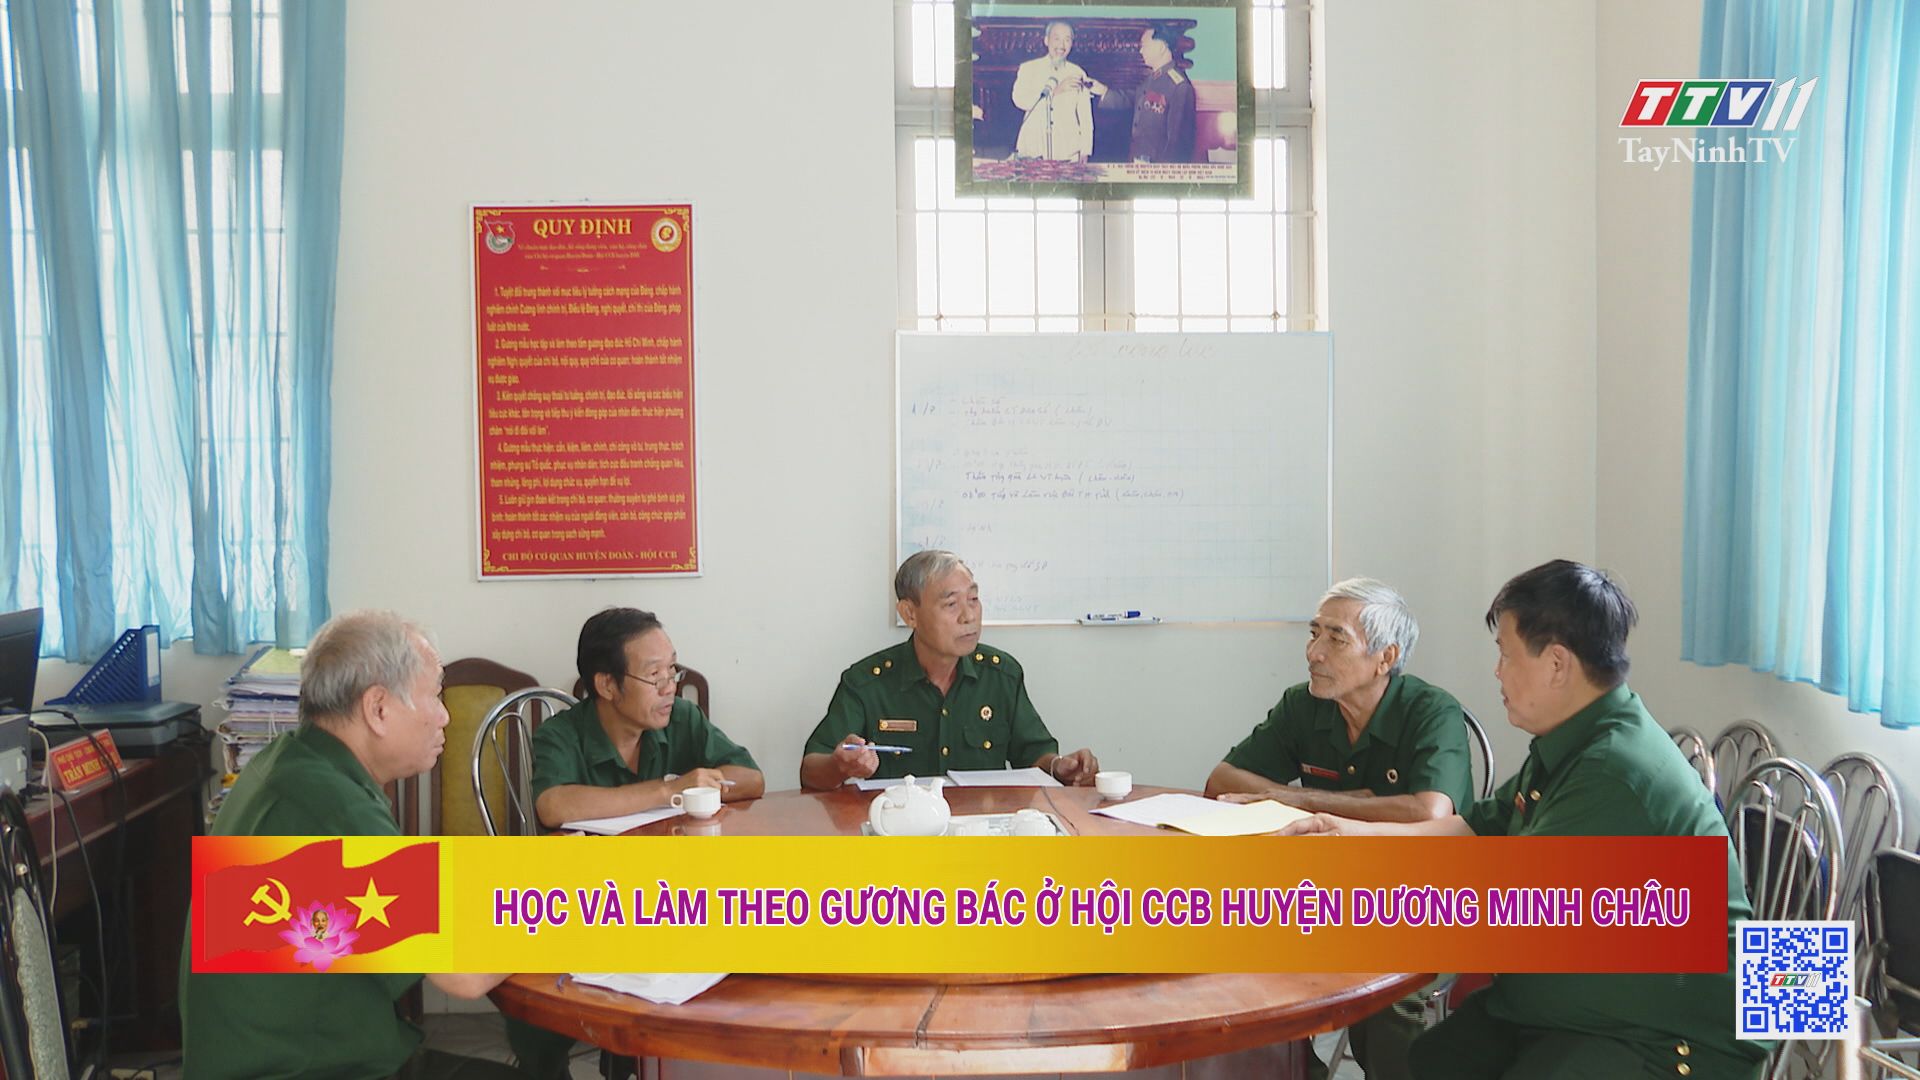 Học và làm theo gương Bác ở Hội CCB Huyện Dương Minh Châu | Học và làm theo tư tưởng, đạo đức, phong cách Hồ Chí Minh | TayNinhTV